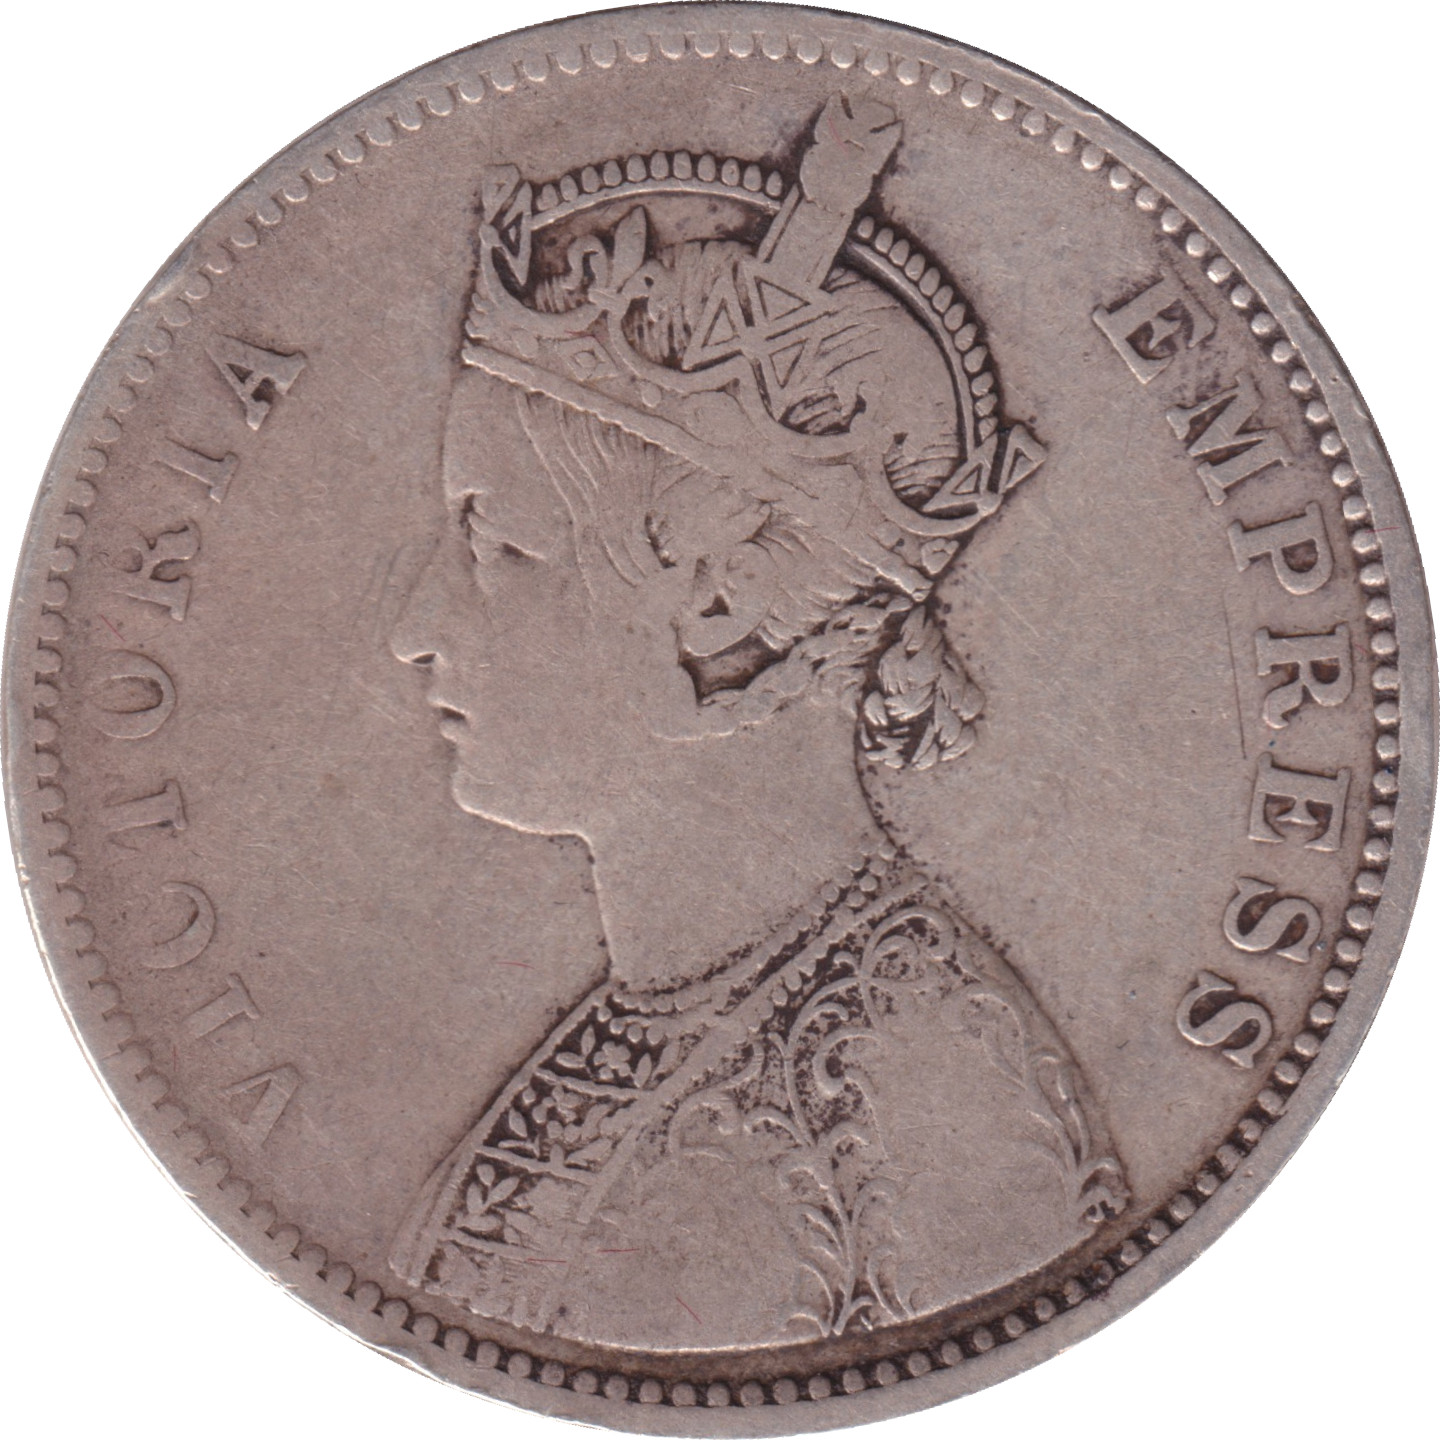 1 rupee - Victoria Empress